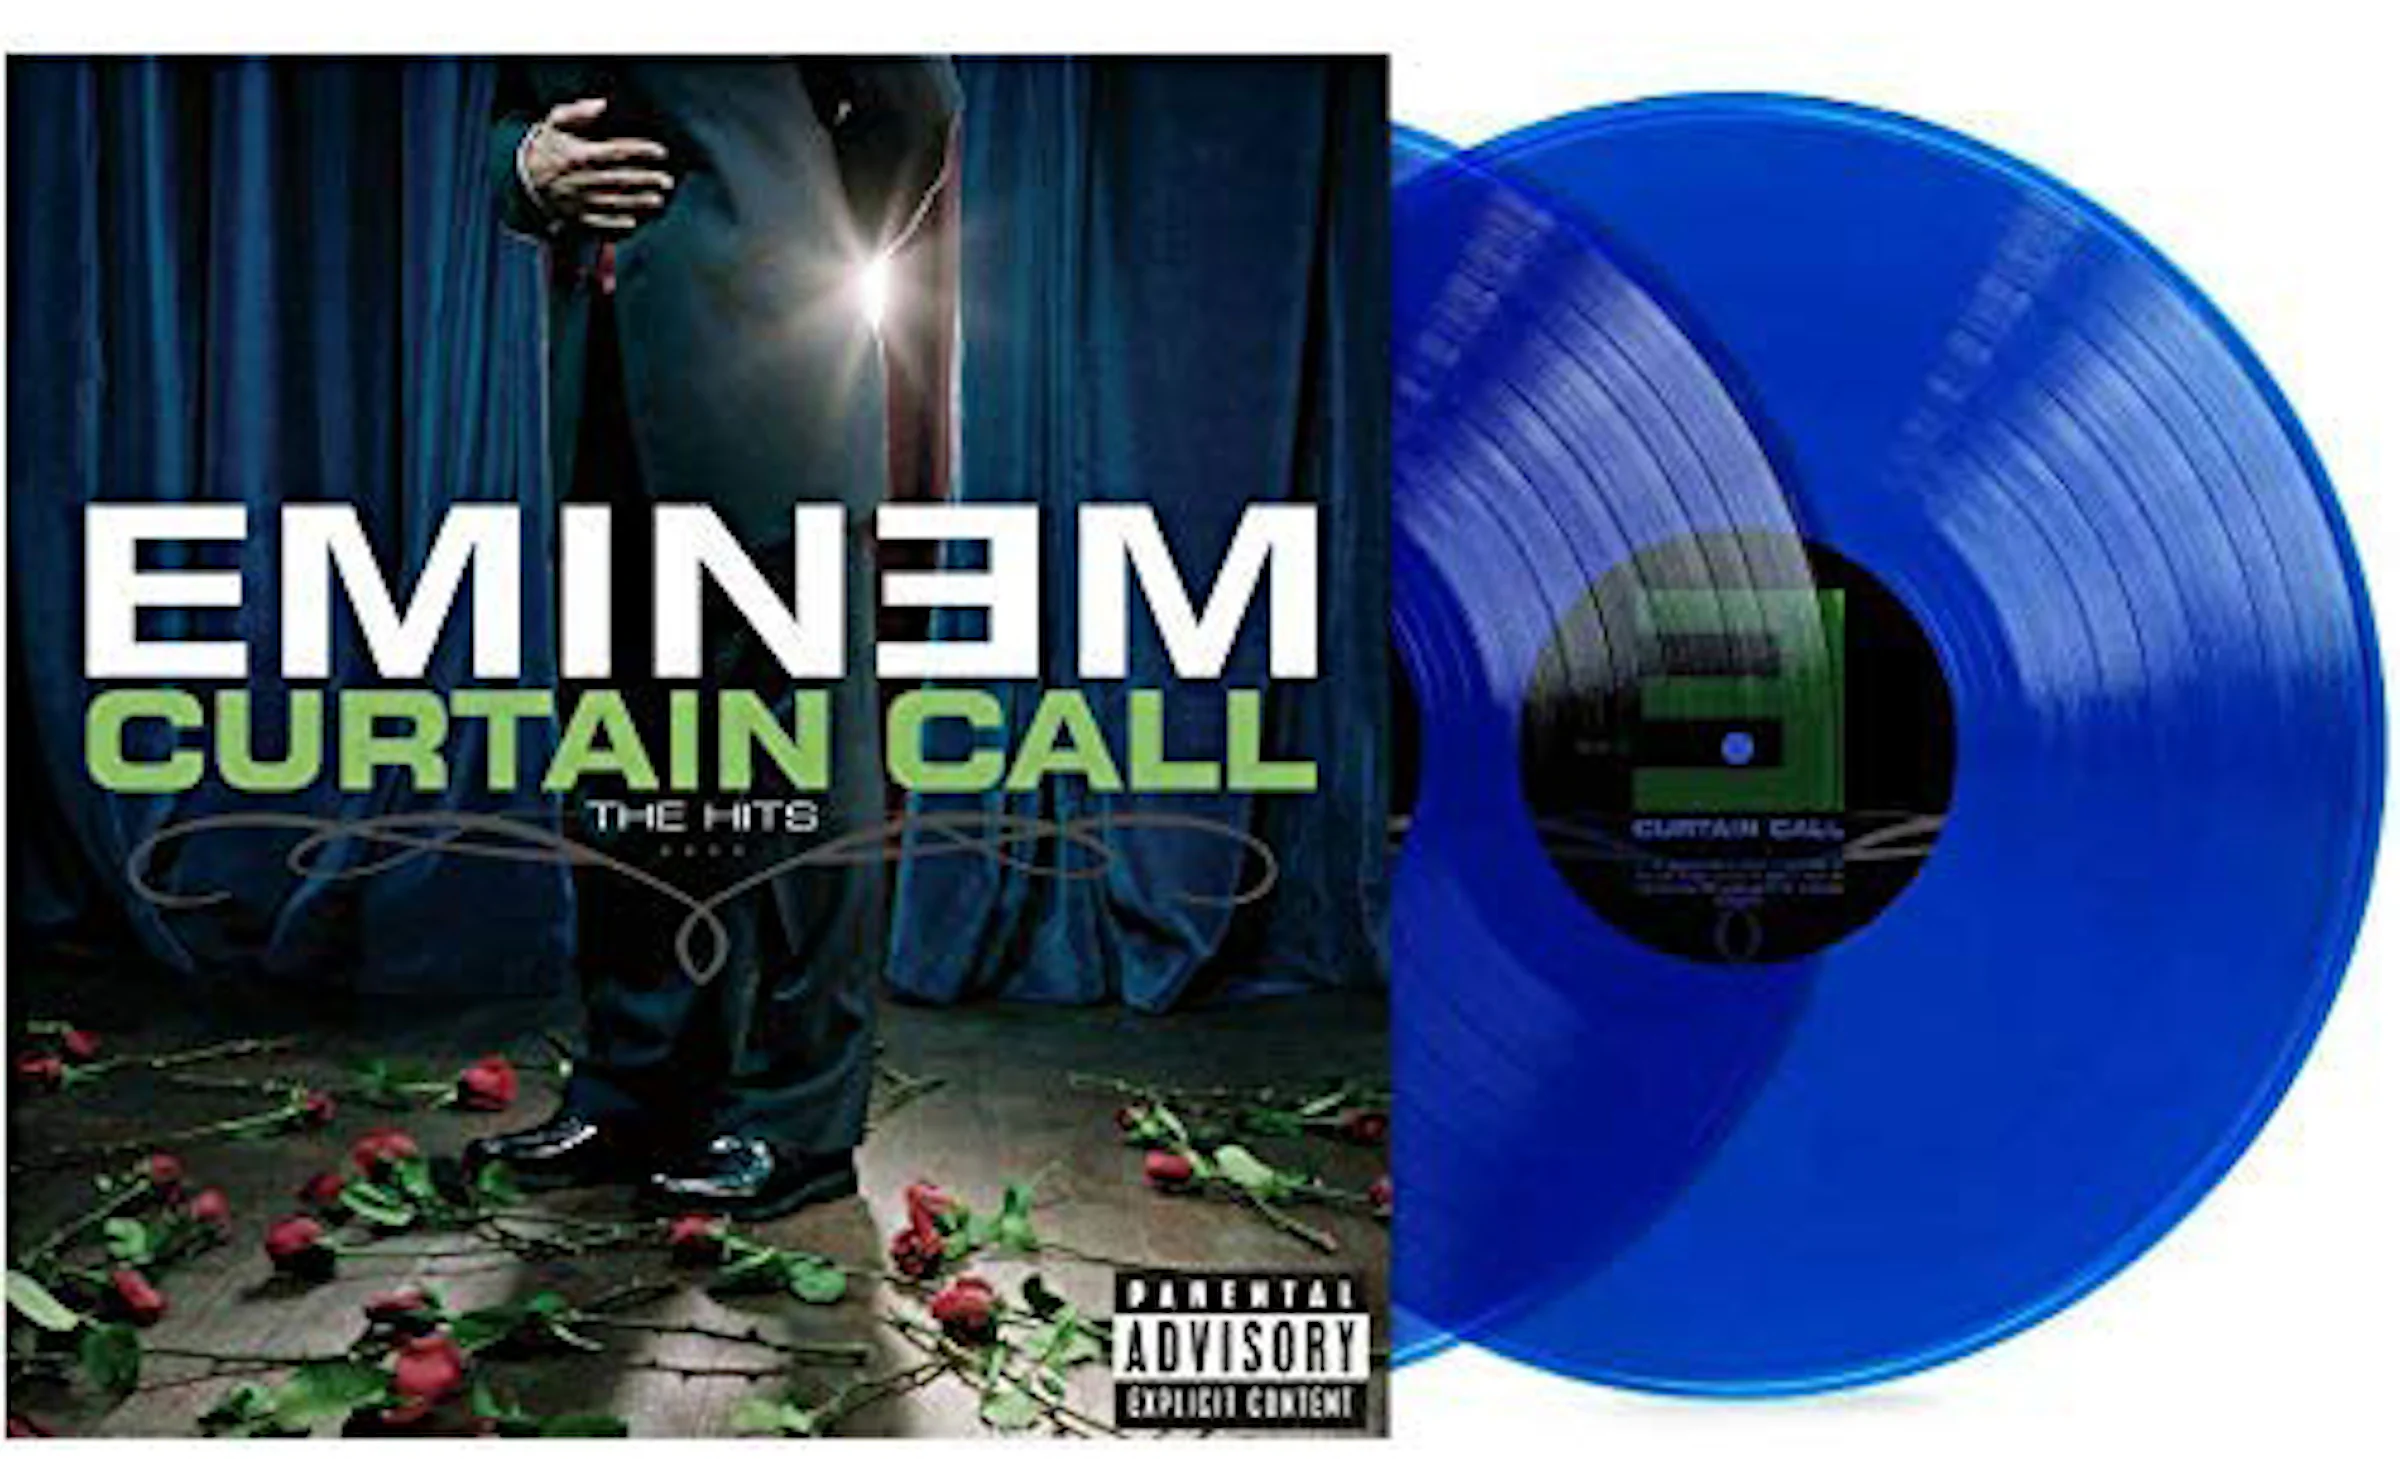 Eminem - Curtain Call Vinyl Unboxing 